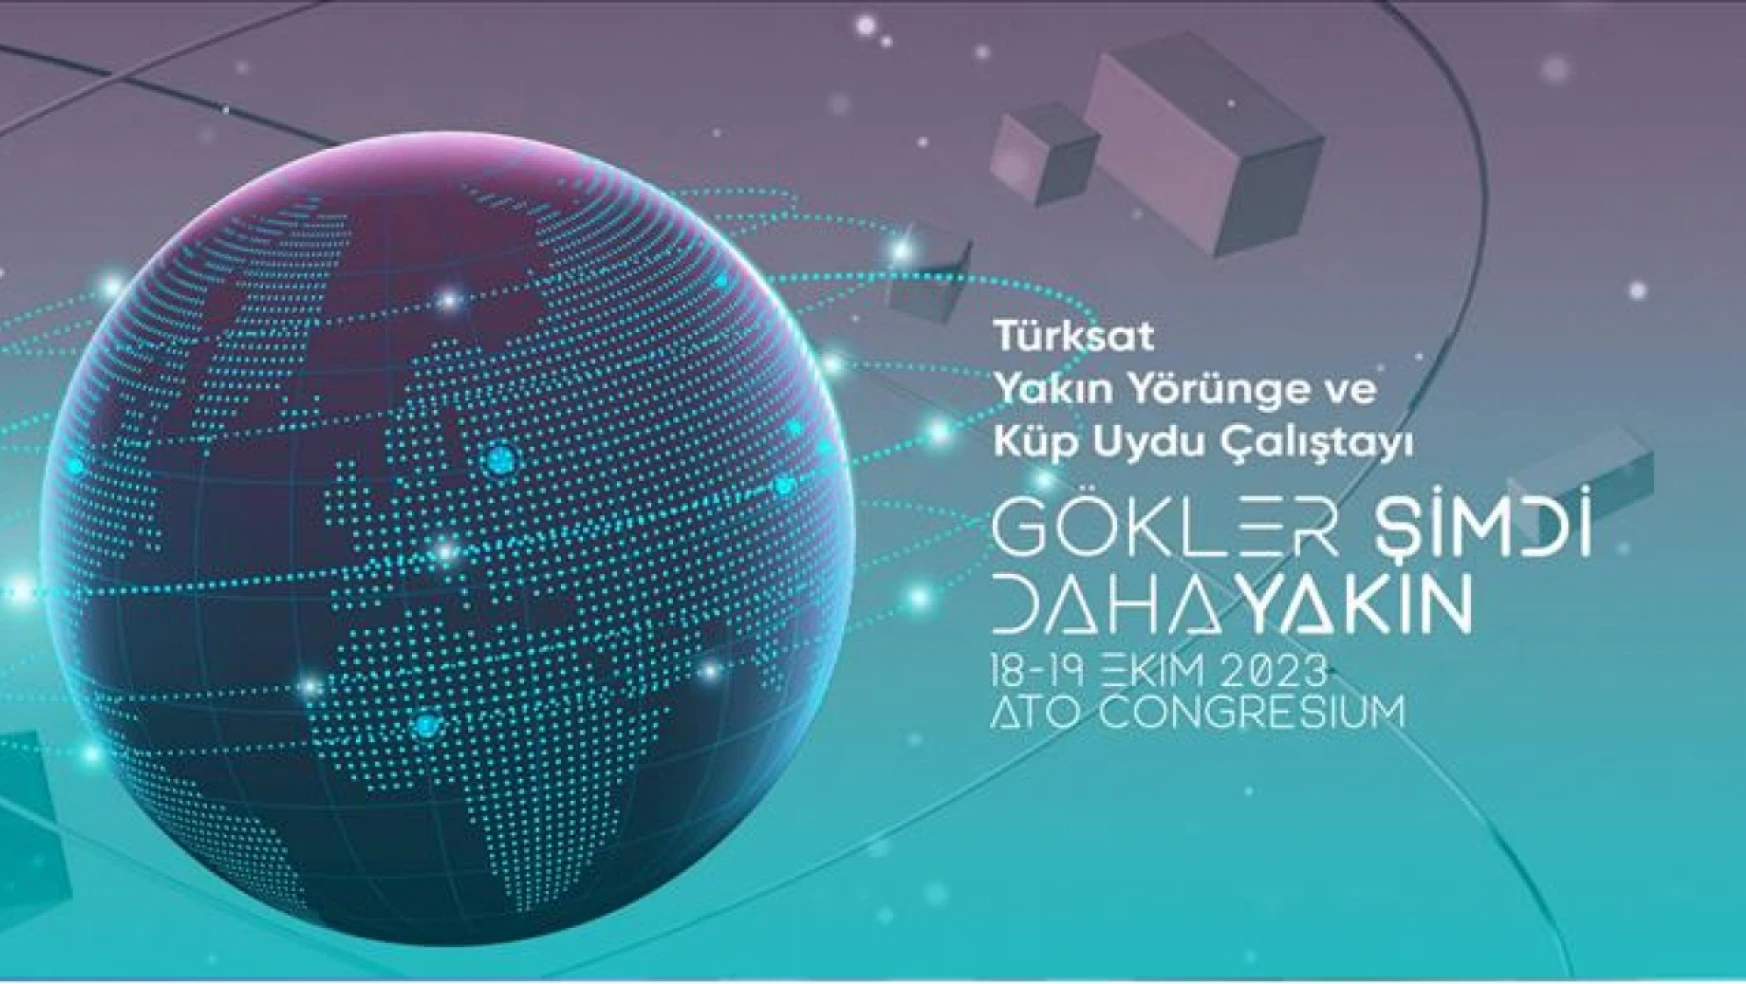 Yakın Yörünge ve Küp Uydu Çalıştayı 18 Ekim'de Ankara'da başlıyor